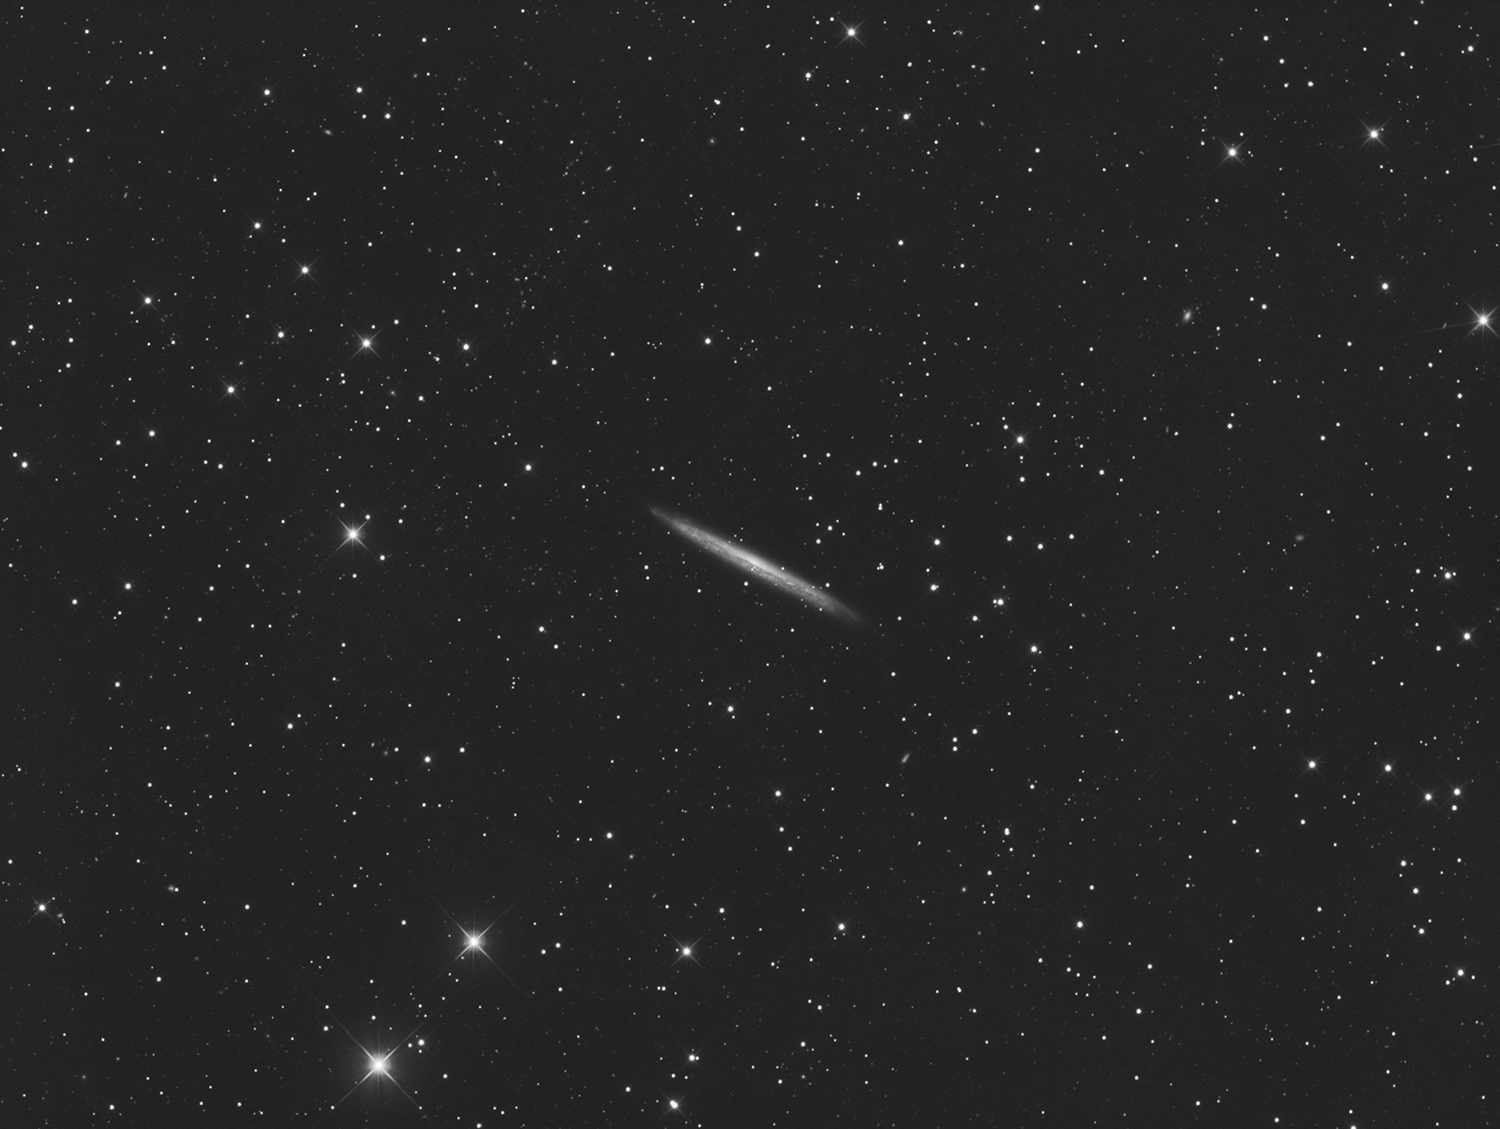 NGC5907_small.jpg